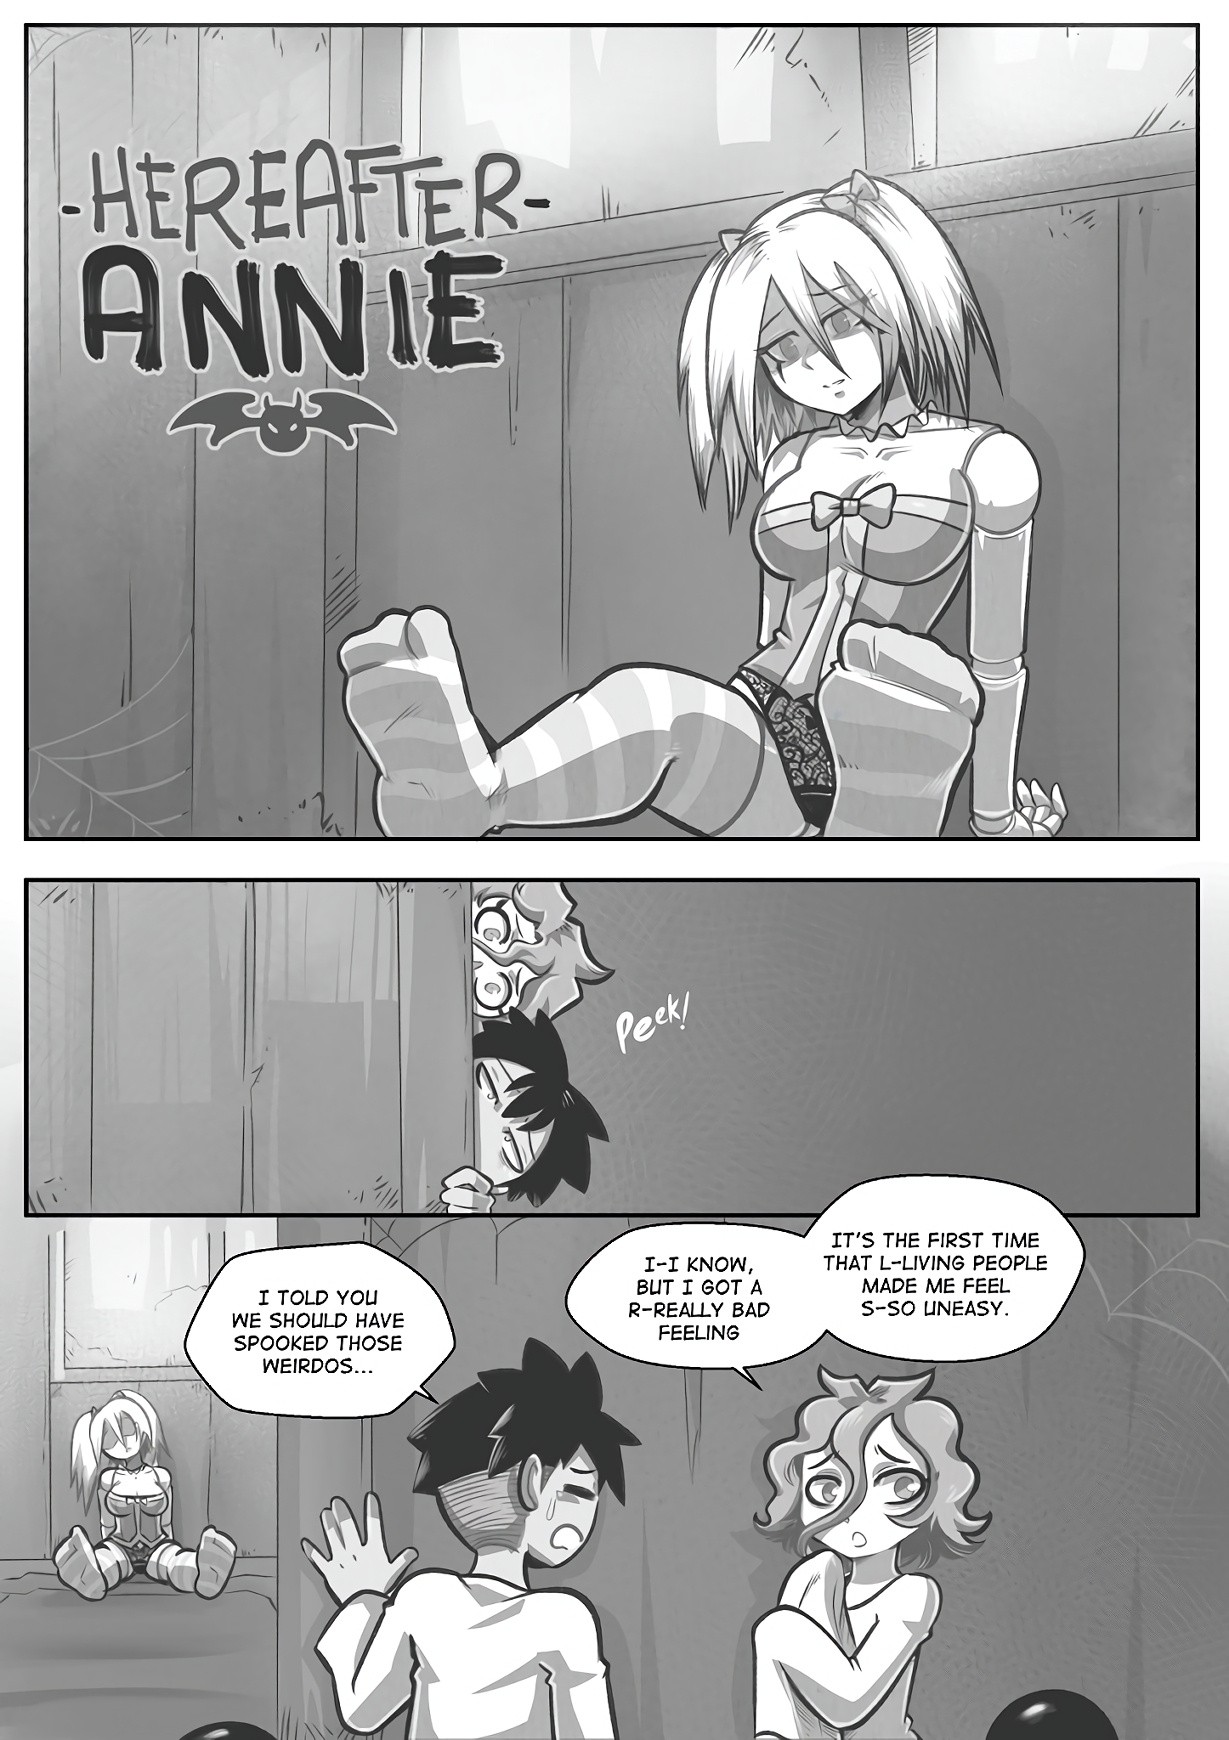 Annie porn comic